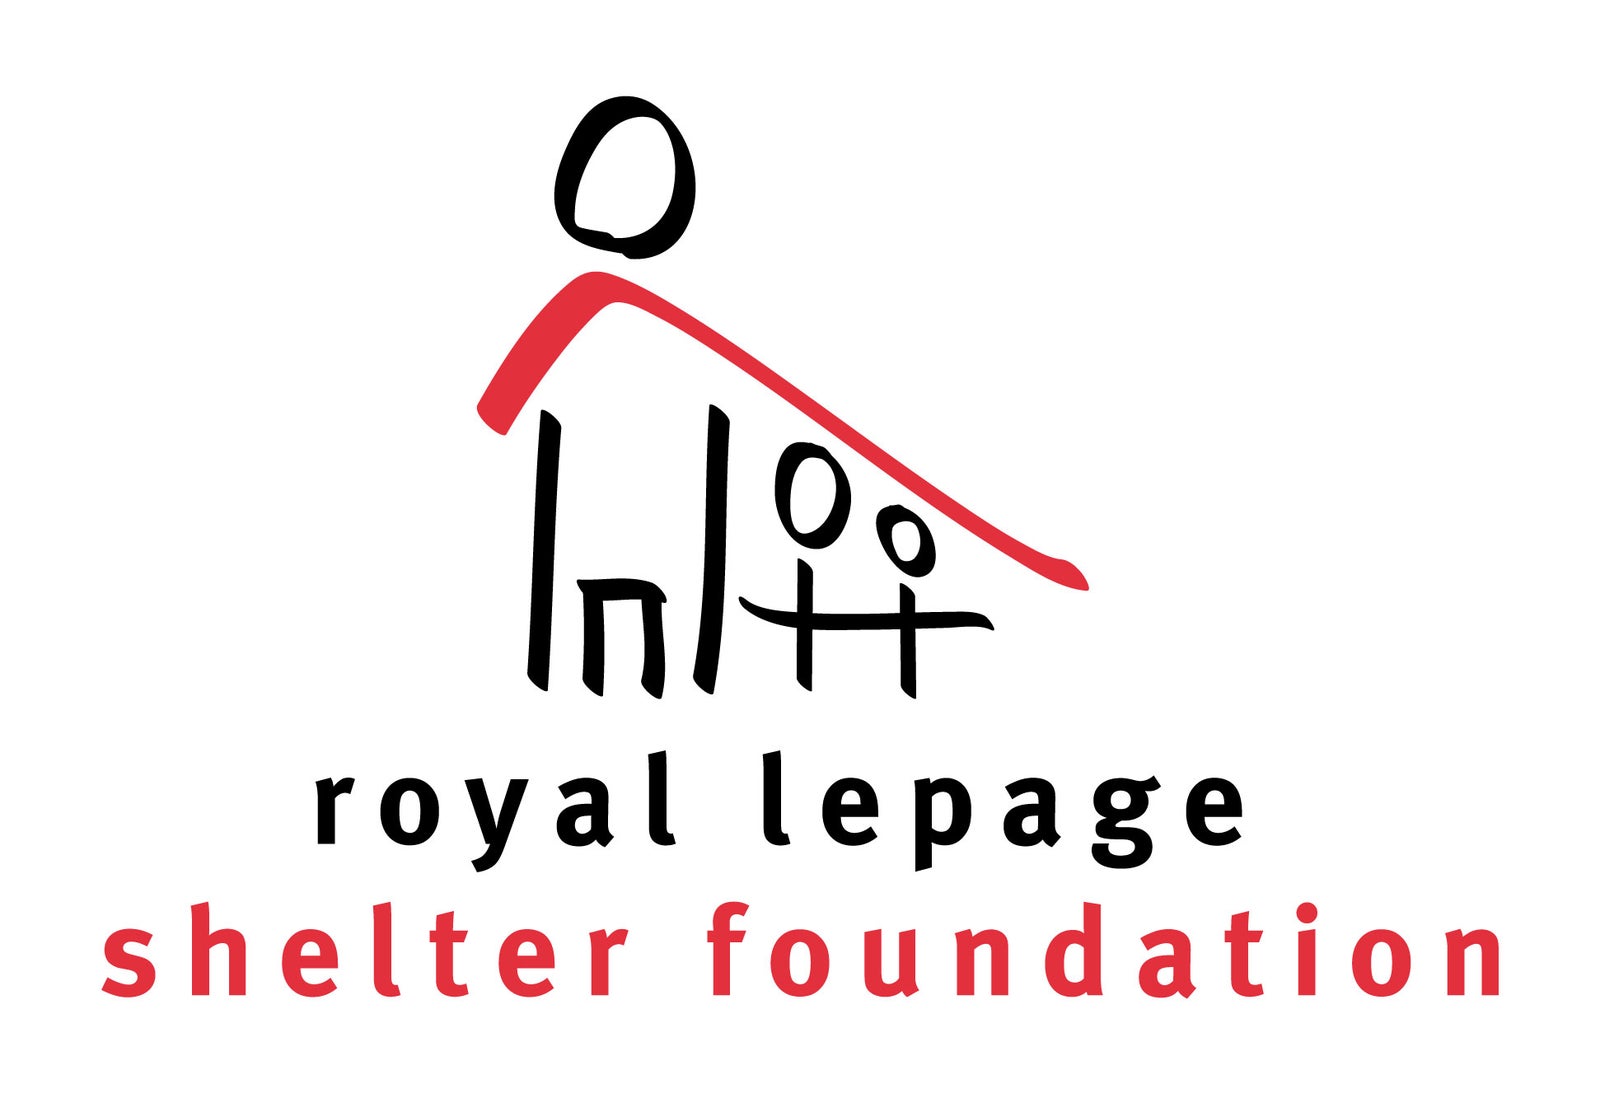 Royal LePage Shelter Foundation, real estate agents giving back